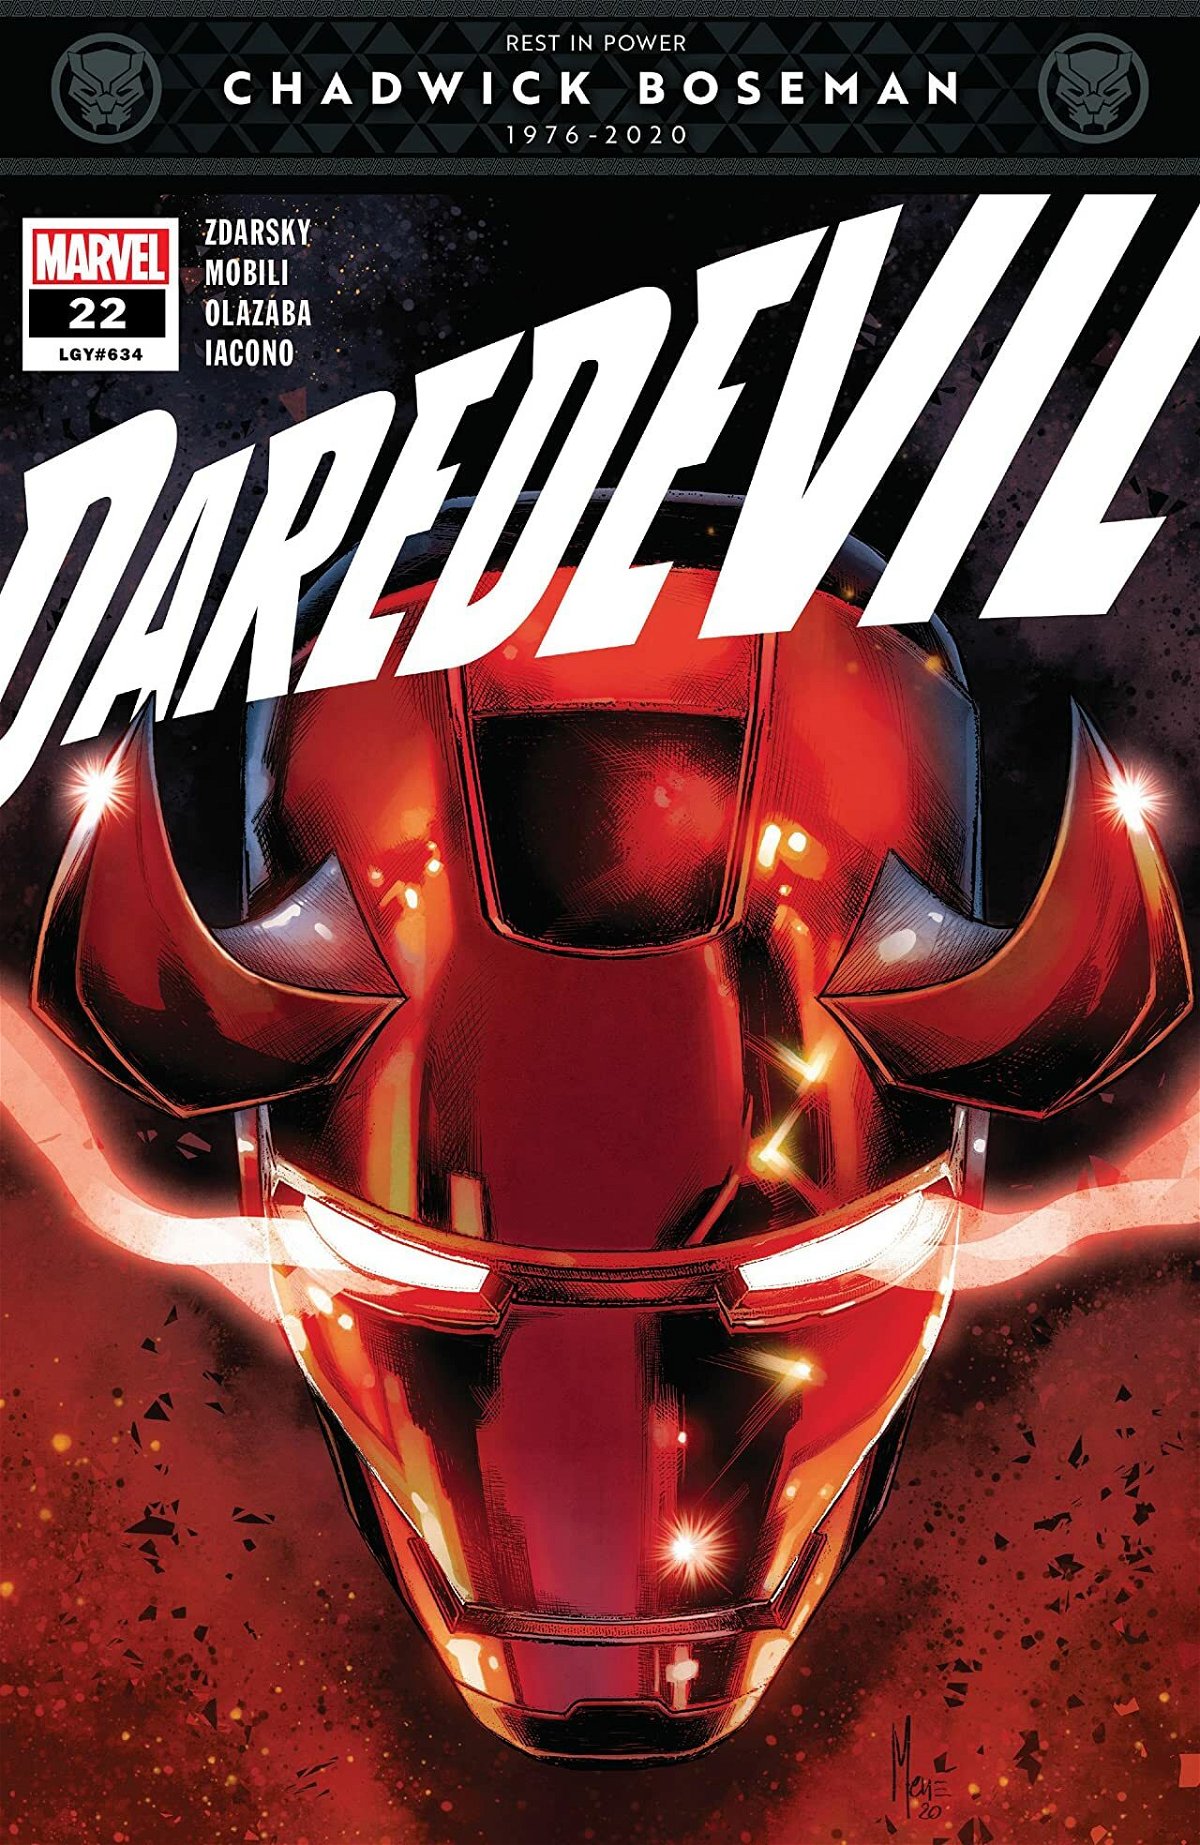 La cover di Daredevil con la fascetta che omaggia Boseman